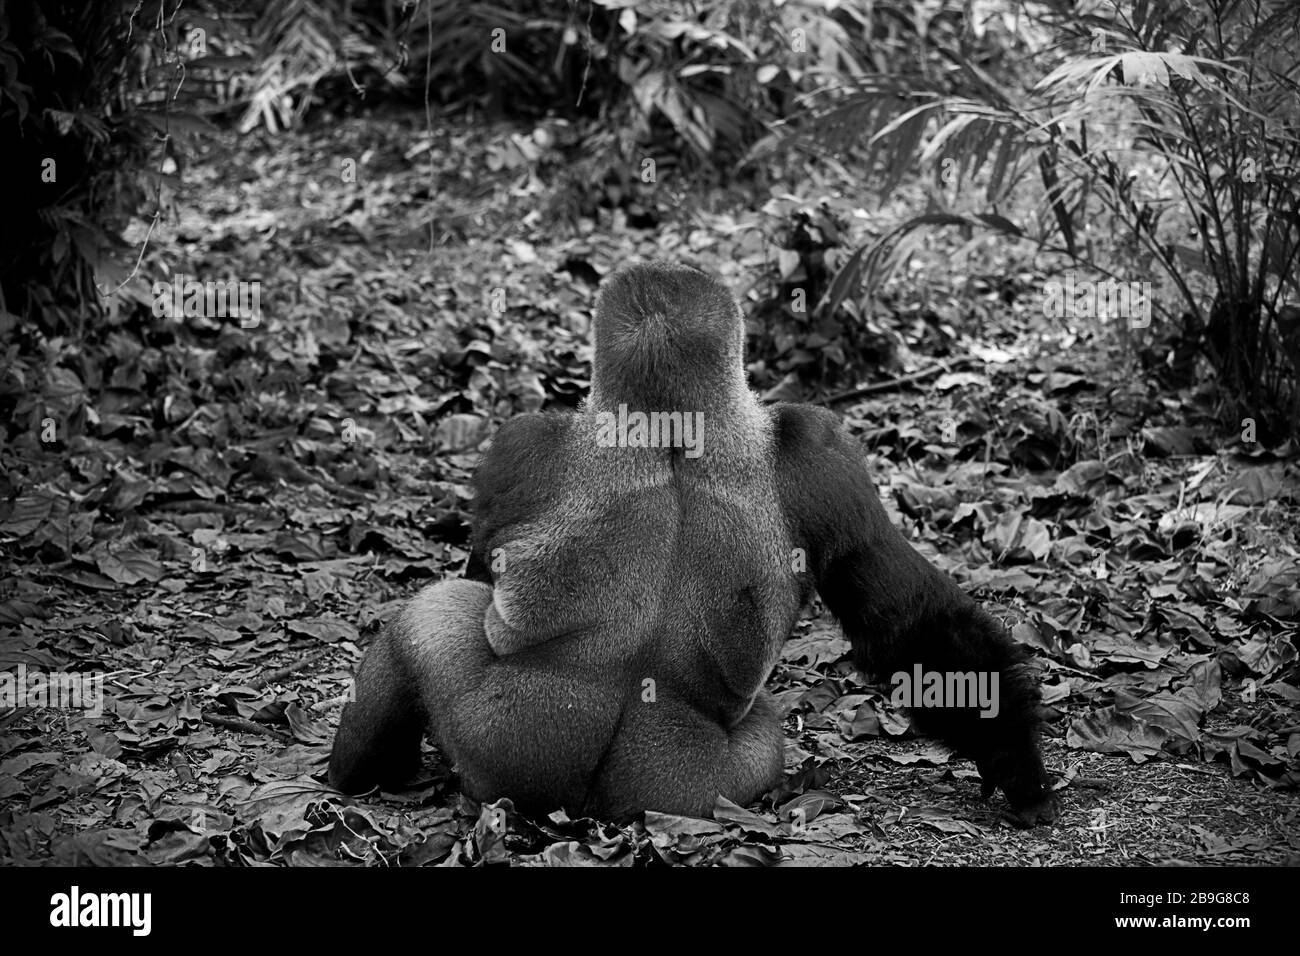 Umwelt, Rückenporträt eines westlichen Gorillas (Gorilla gorilla). Foto: Reynold Sumayku Stockfoto